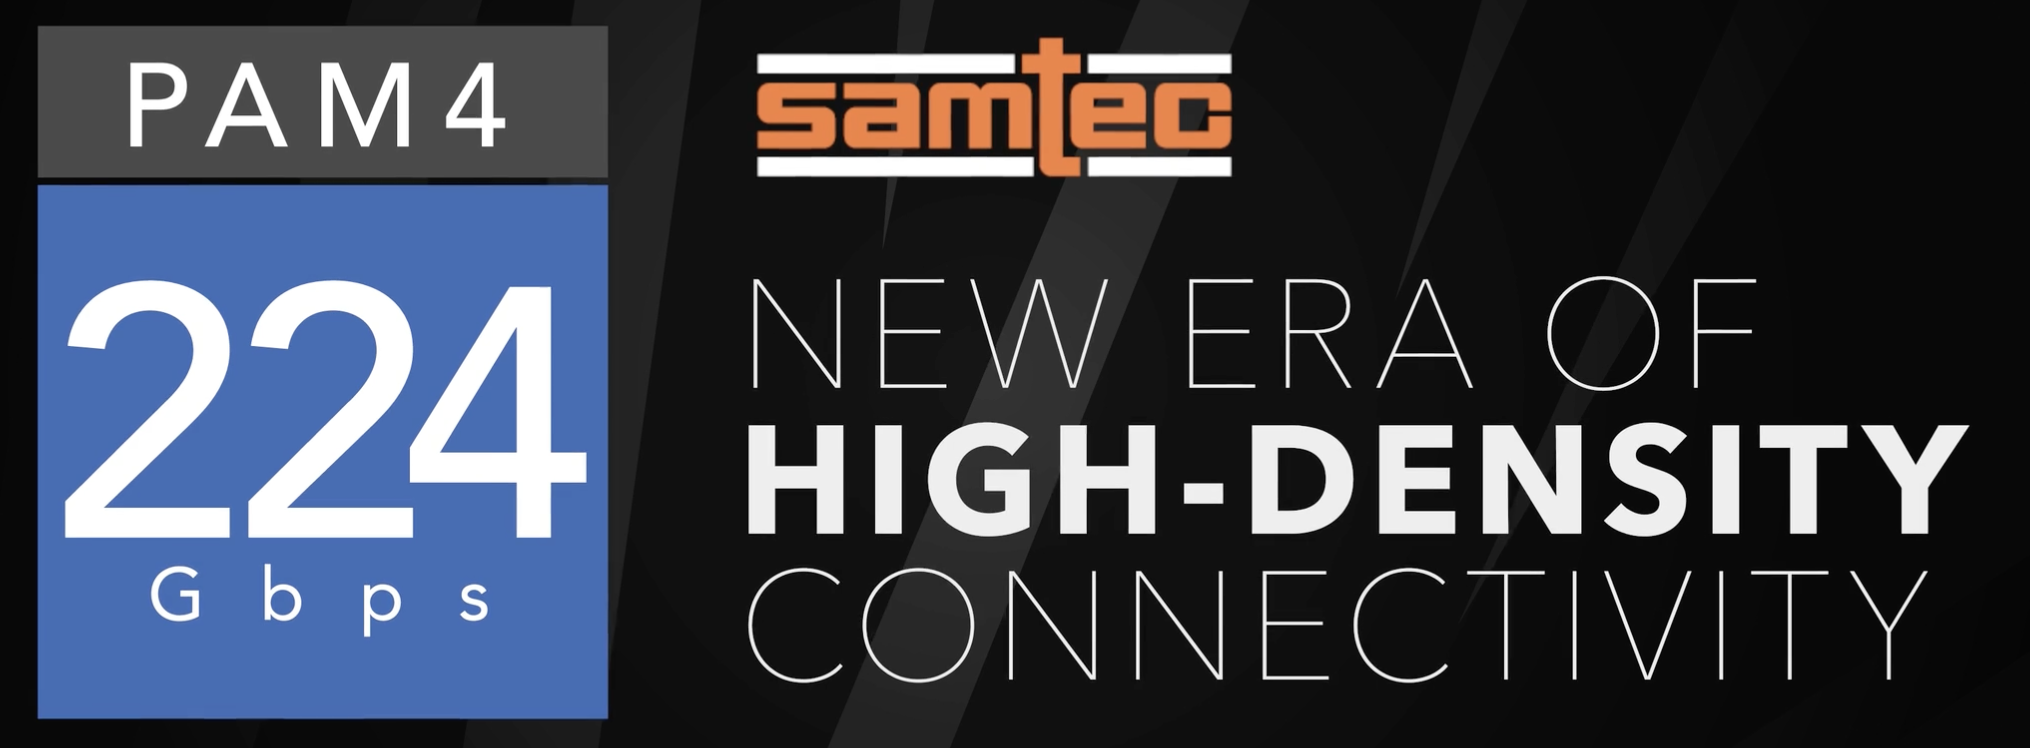 Samtec は実証済みの 224G PAM4 相互接続ソリューションでお客様を未来へ歓迎します